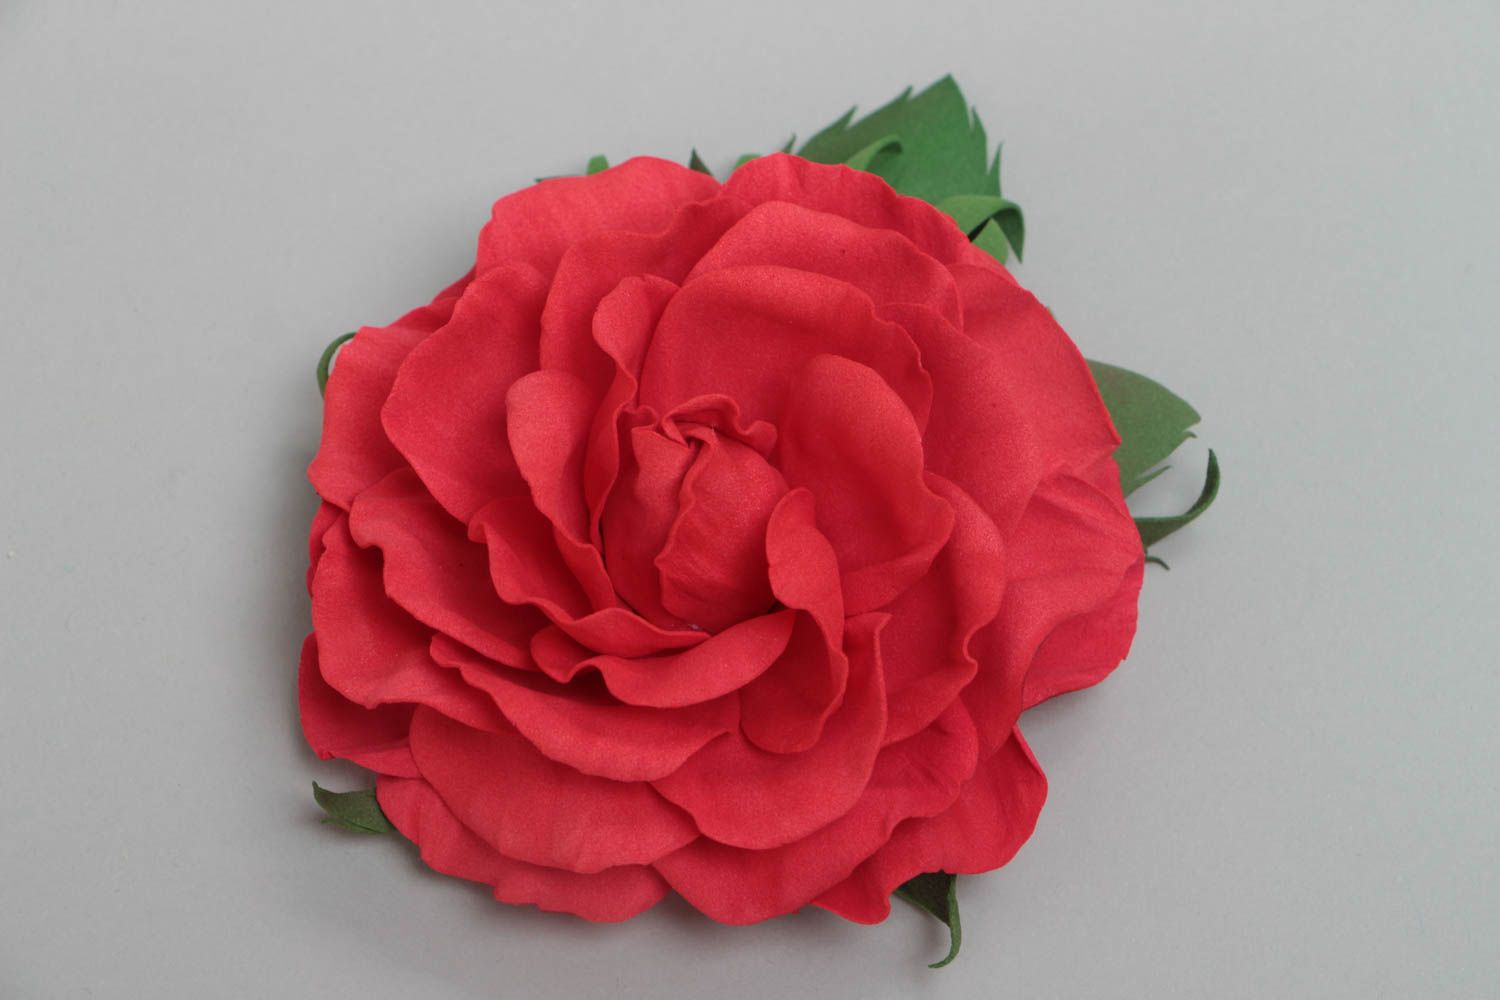 Красная брошь в виде цветка из фоамирана ручной работы крупная красивая фото 2